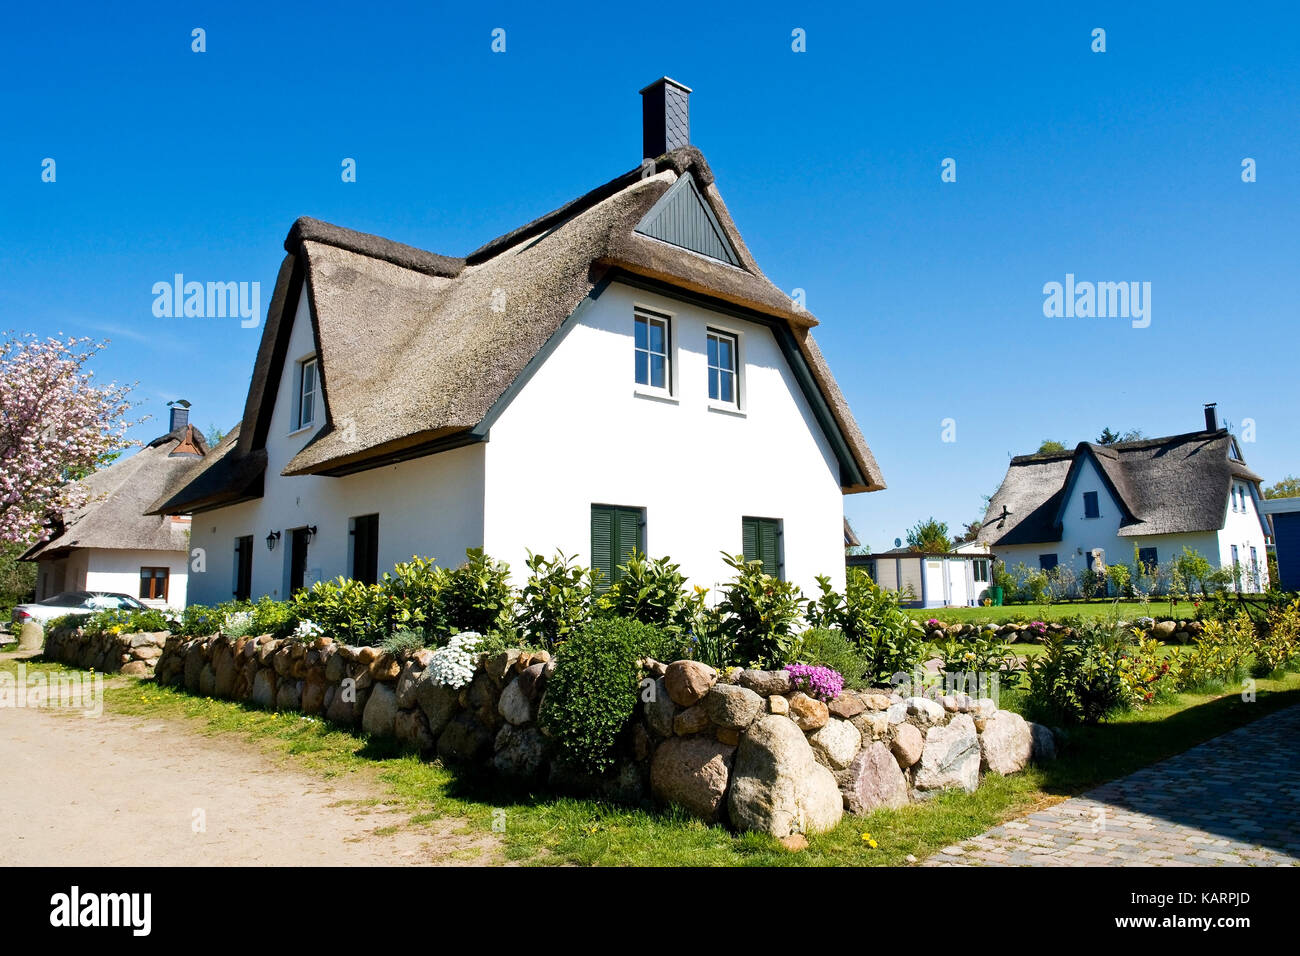 Poel, summer cottages in village Timmen on the island Poel, Ferienhaeuser in Timmendorf auf der Insel Poel Stock Photo